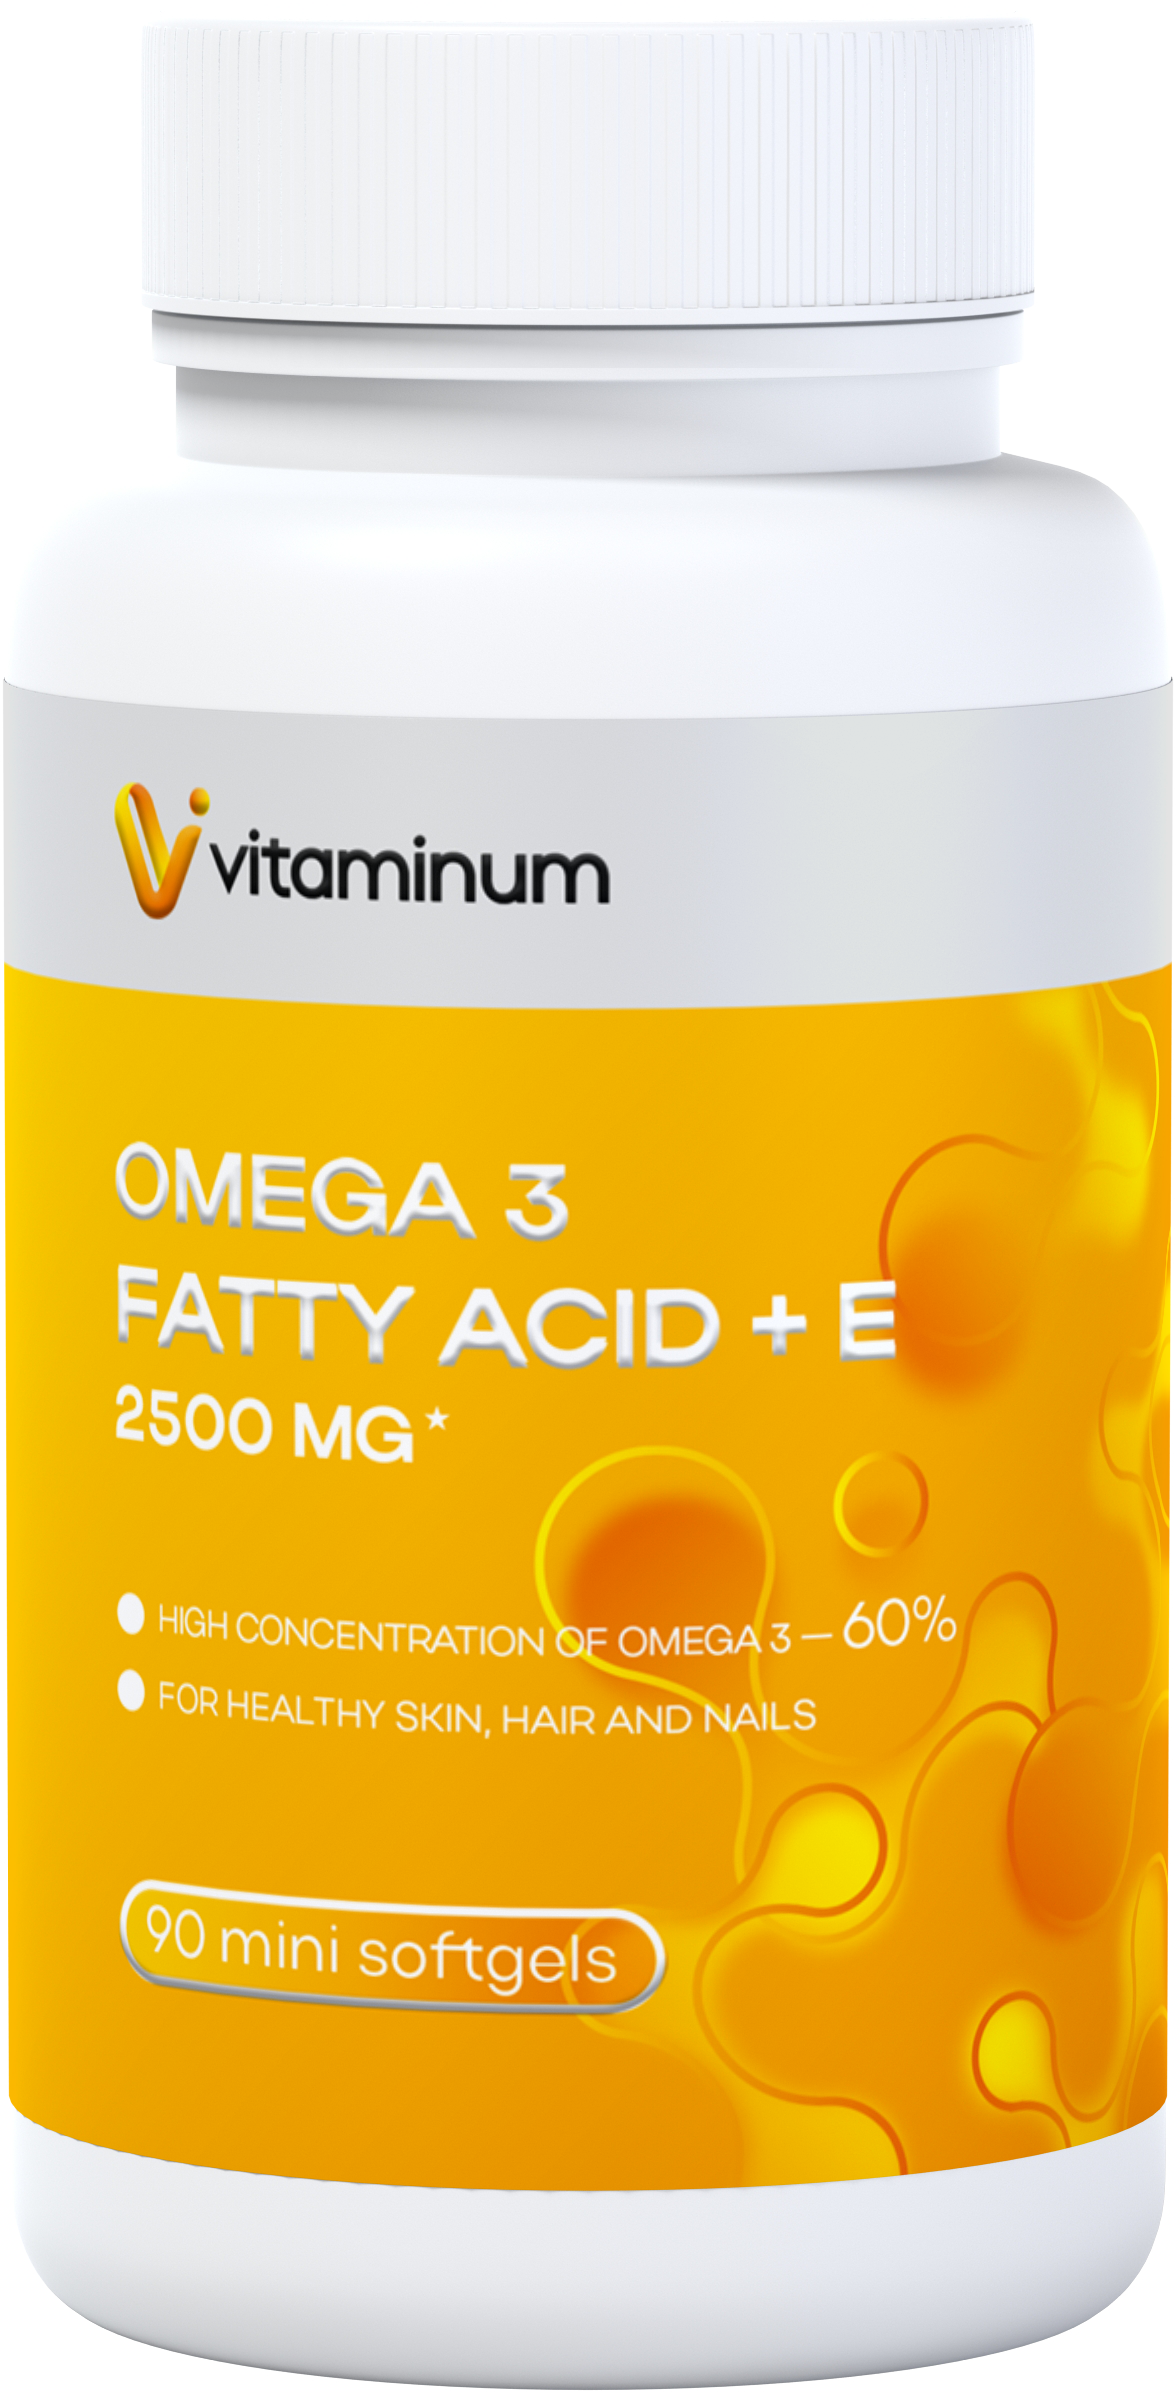  Vitaminum ОМЕГА 3 60% + витамин Е (2500 MG*) 90 капсул 700 мг   в Томске